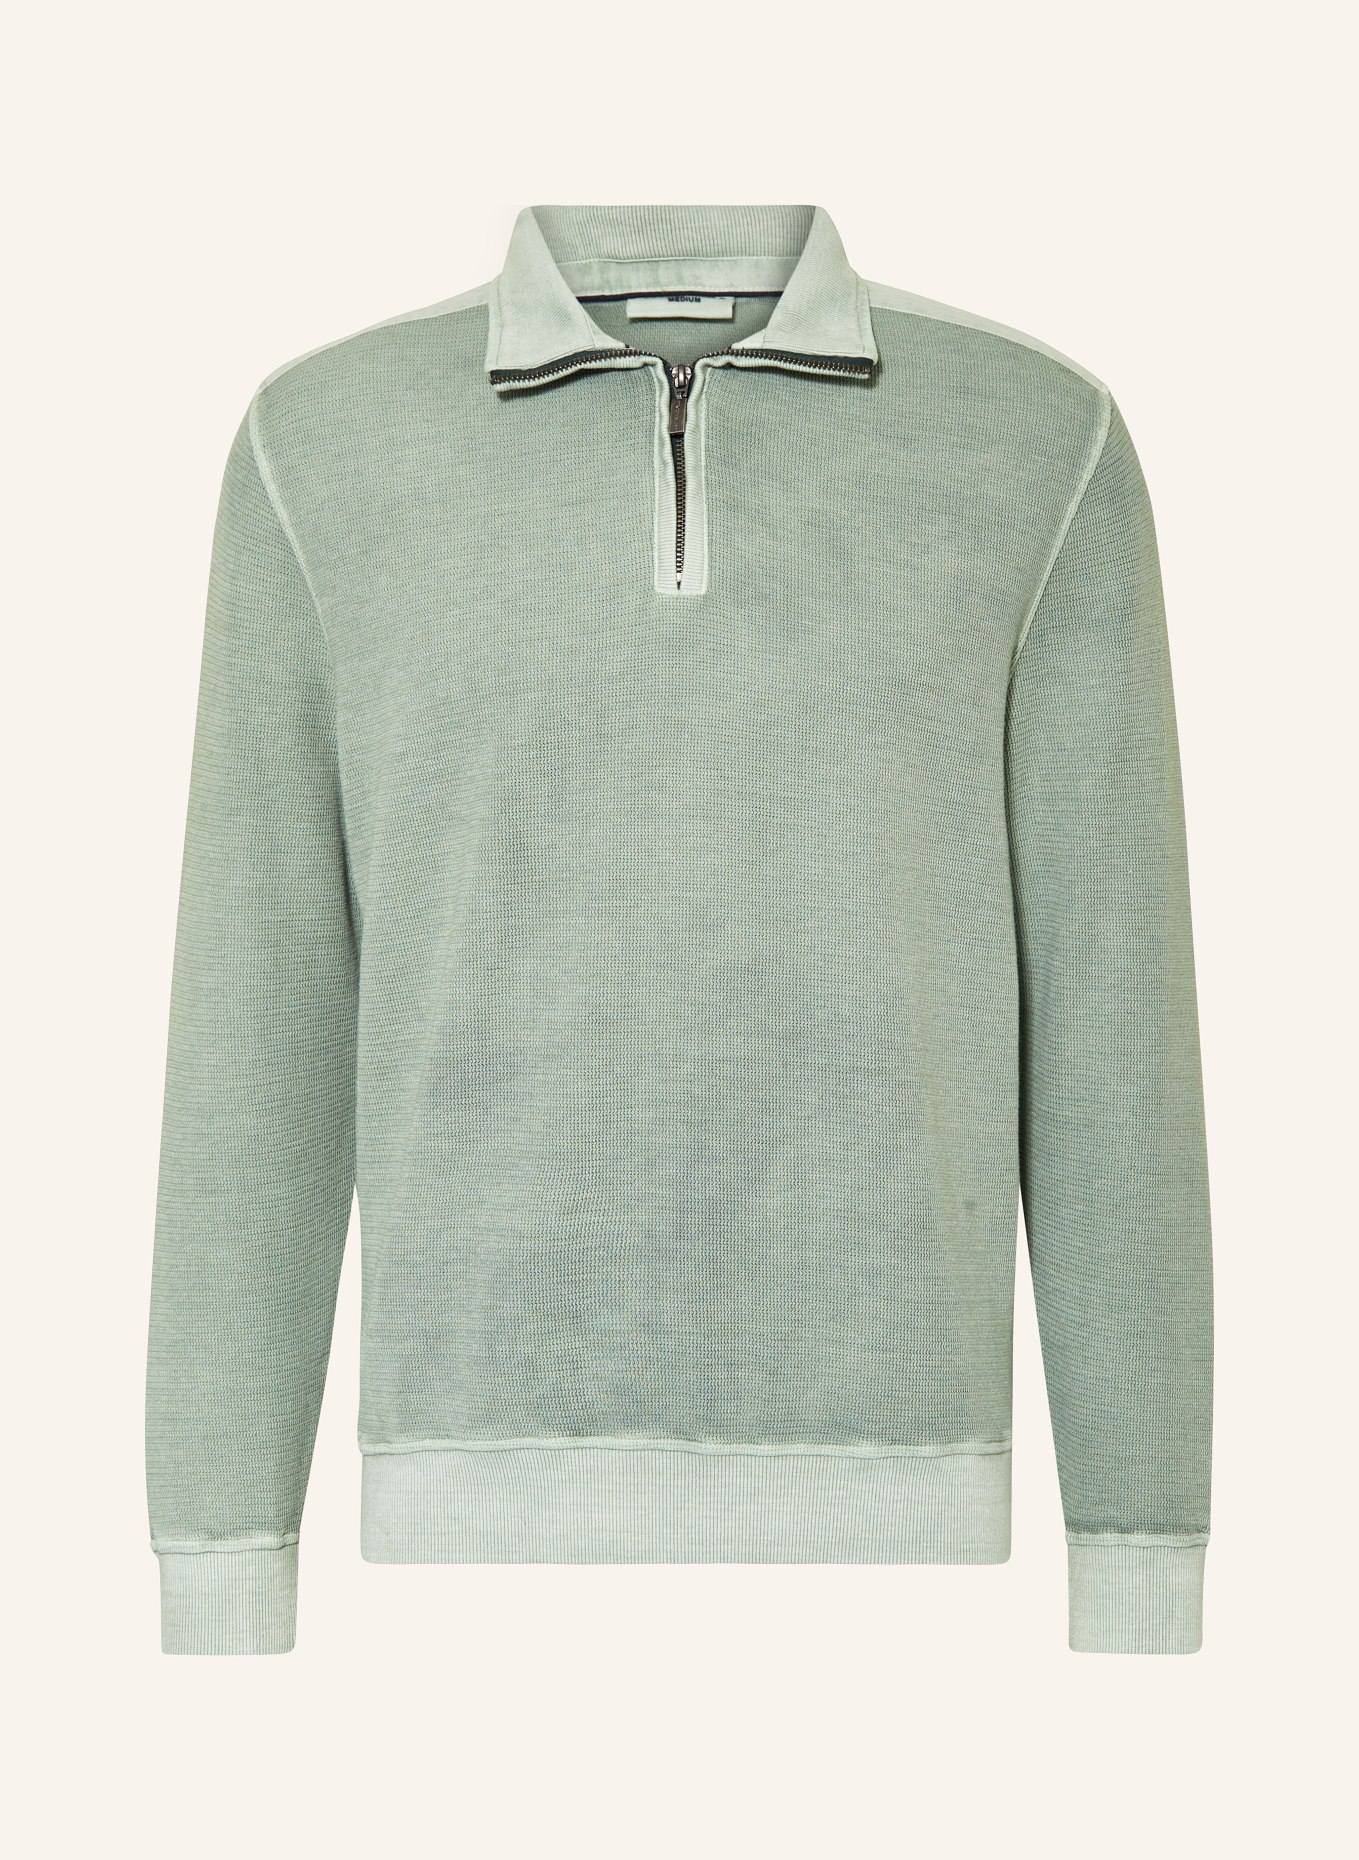 STROKESMAN'S Half-zip sweater in sweatshirt fabric, Color: GREEN (Image 1)